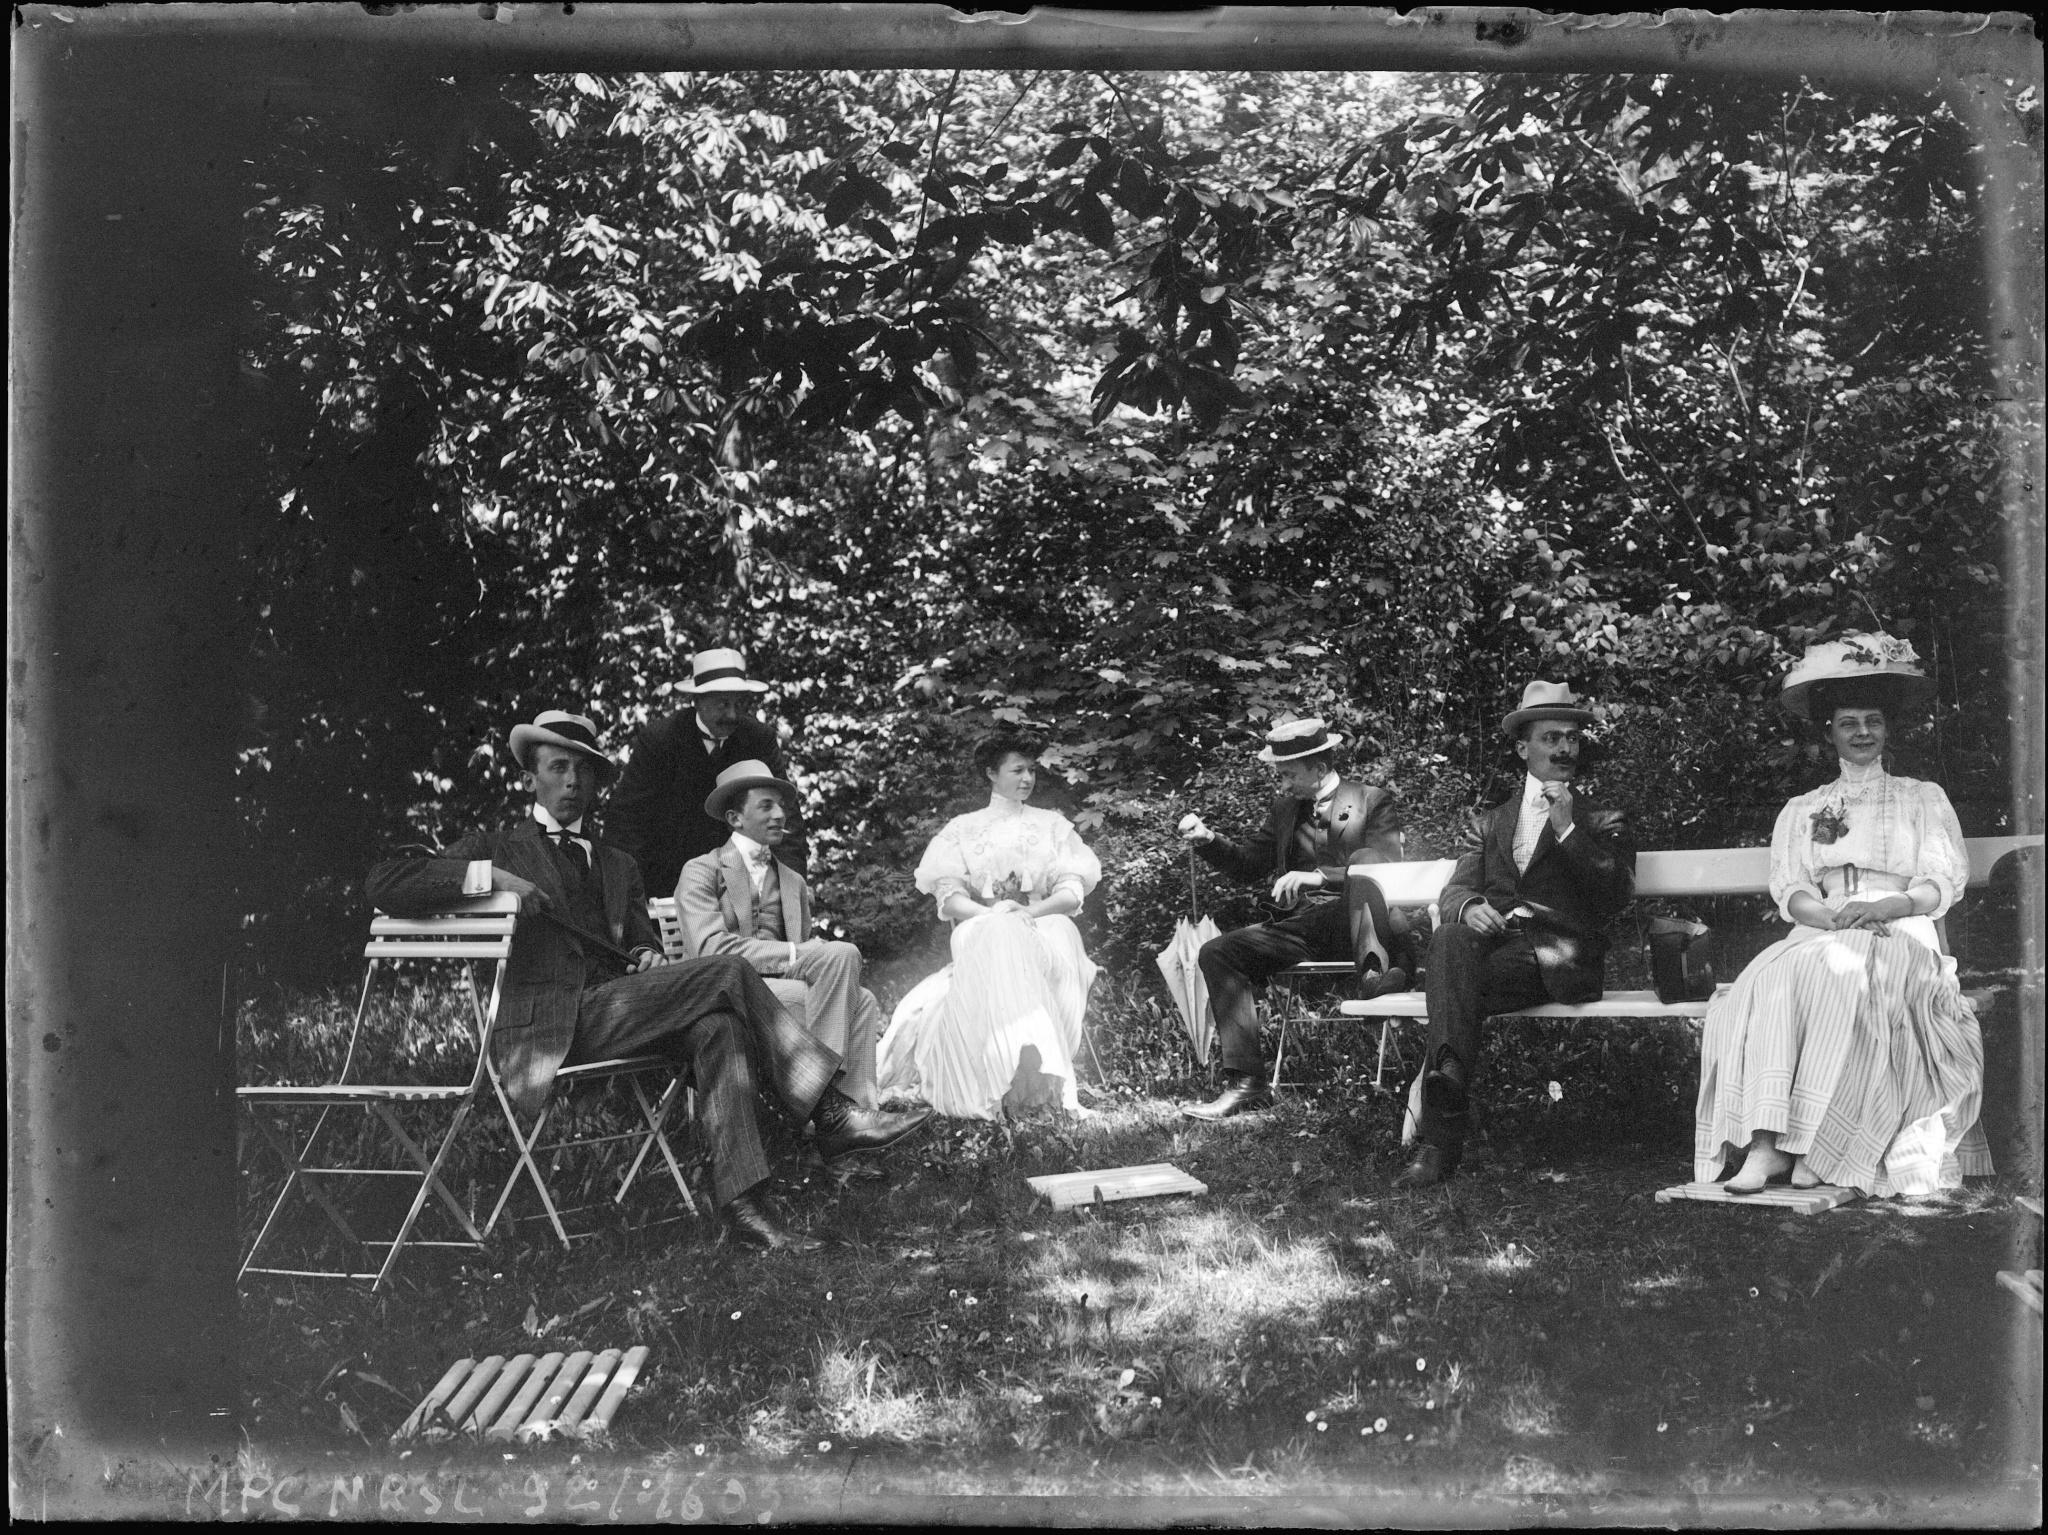 Groupe assis sur des bancs et chaises dans un jardin